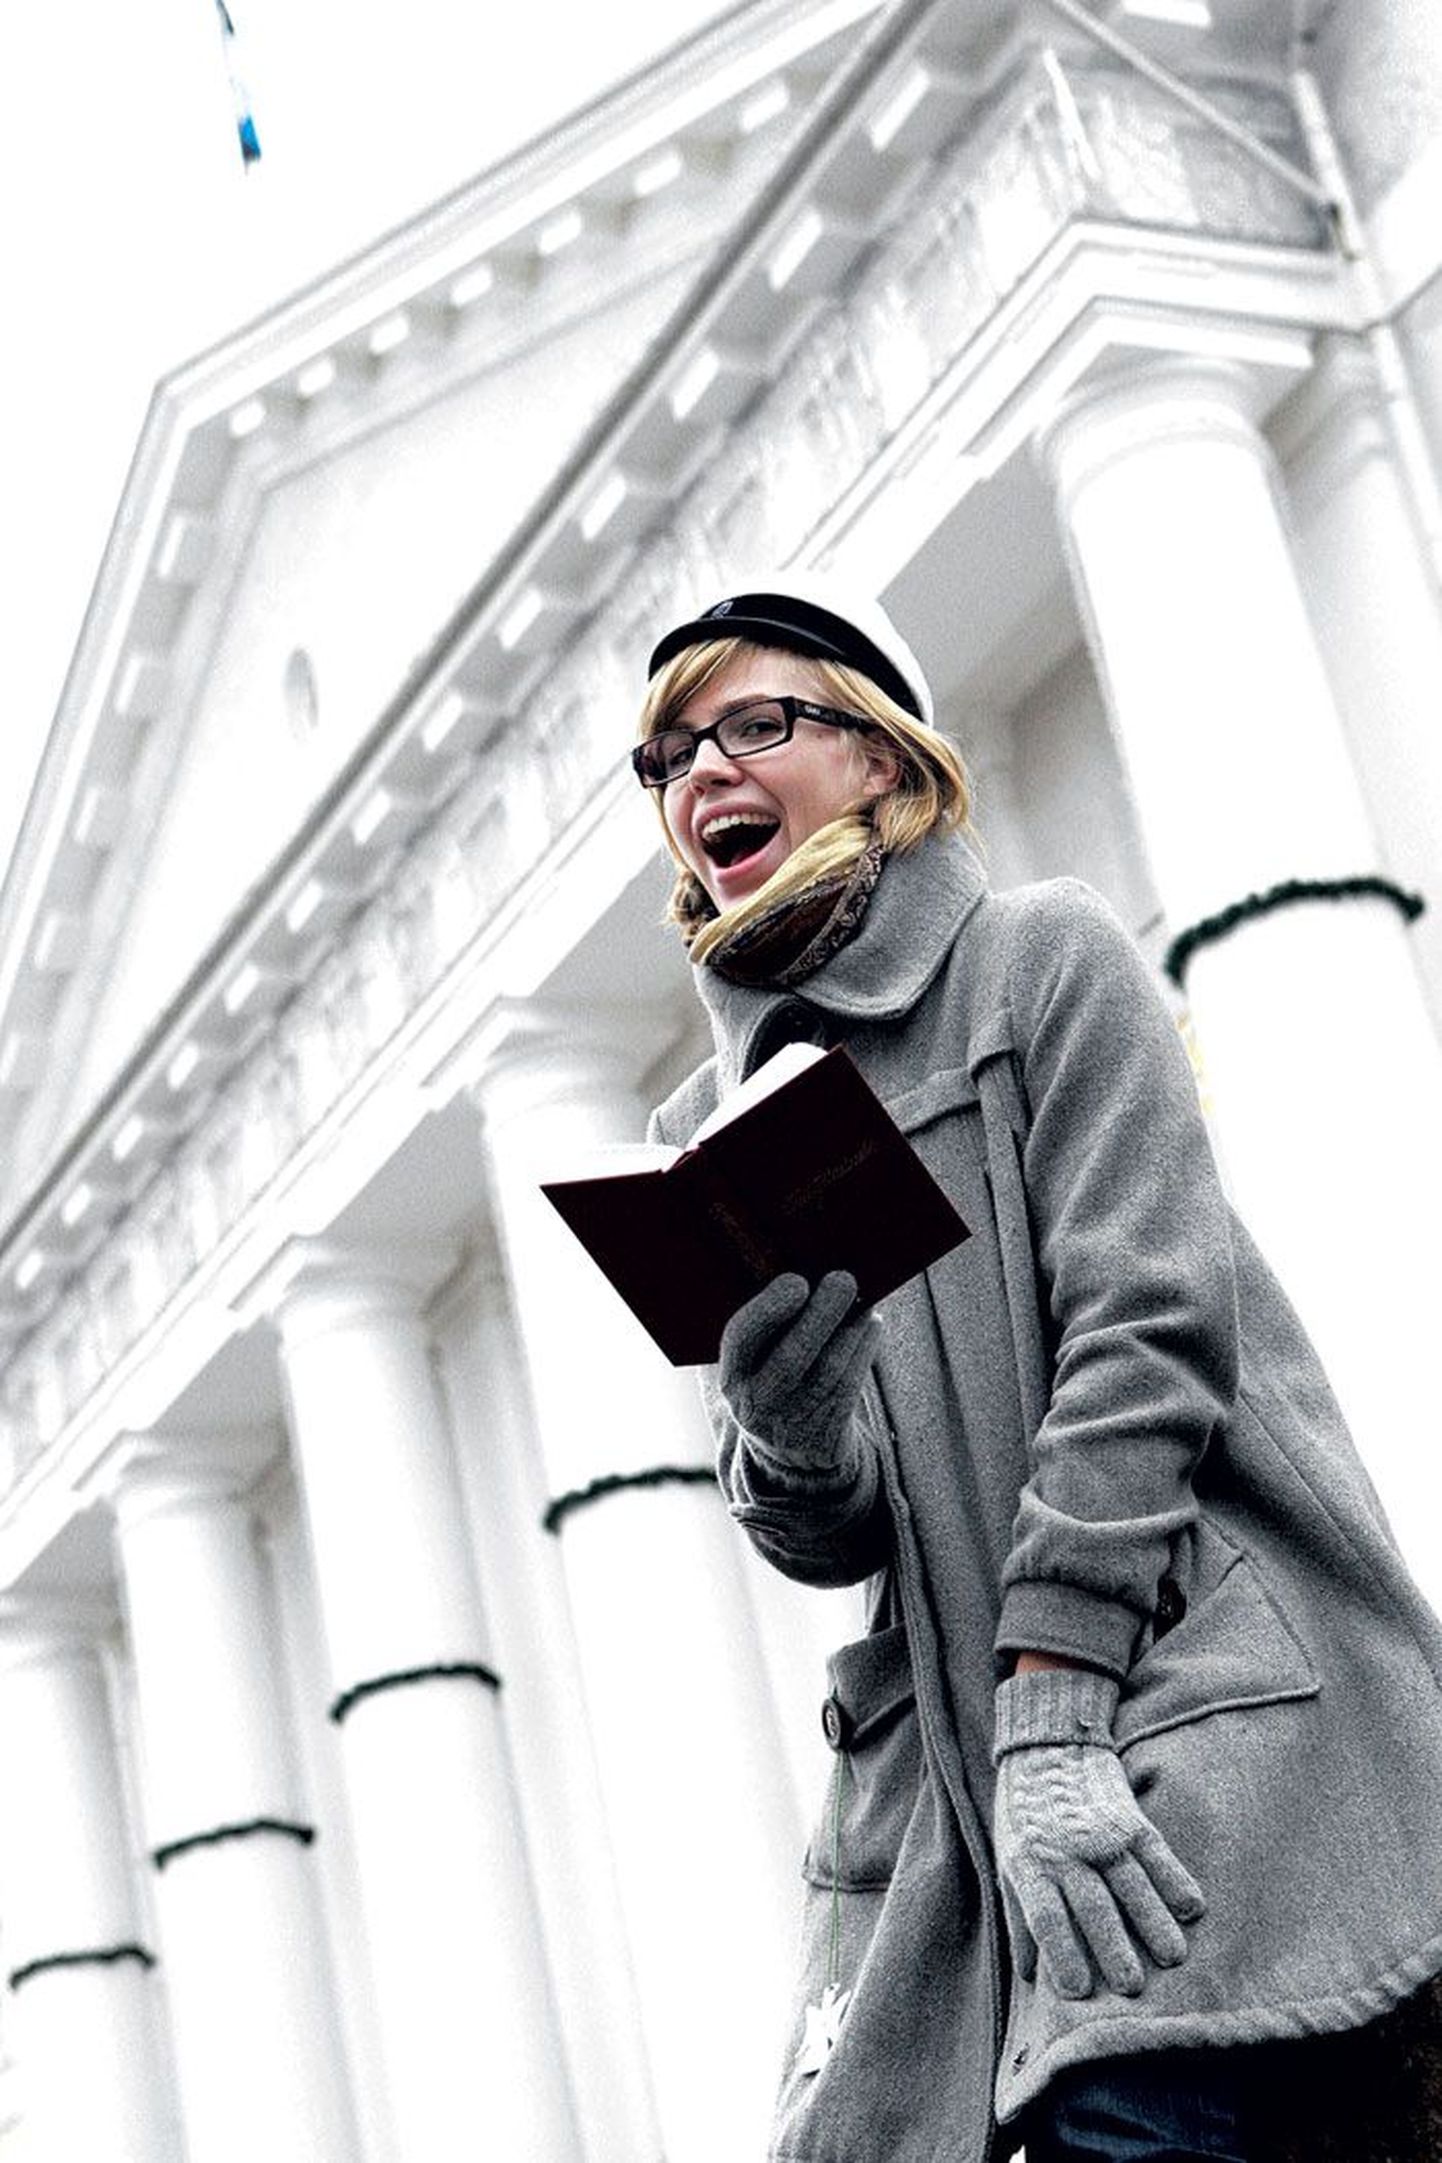 Eile verivärsket üliõpilaslaulikut käes hoidnud Tartu Ülikooli magistrant Maarja Schults leidis, et laulik on oluline kas või ülikoolis laulutraditsiooni alalhoidmiseks.